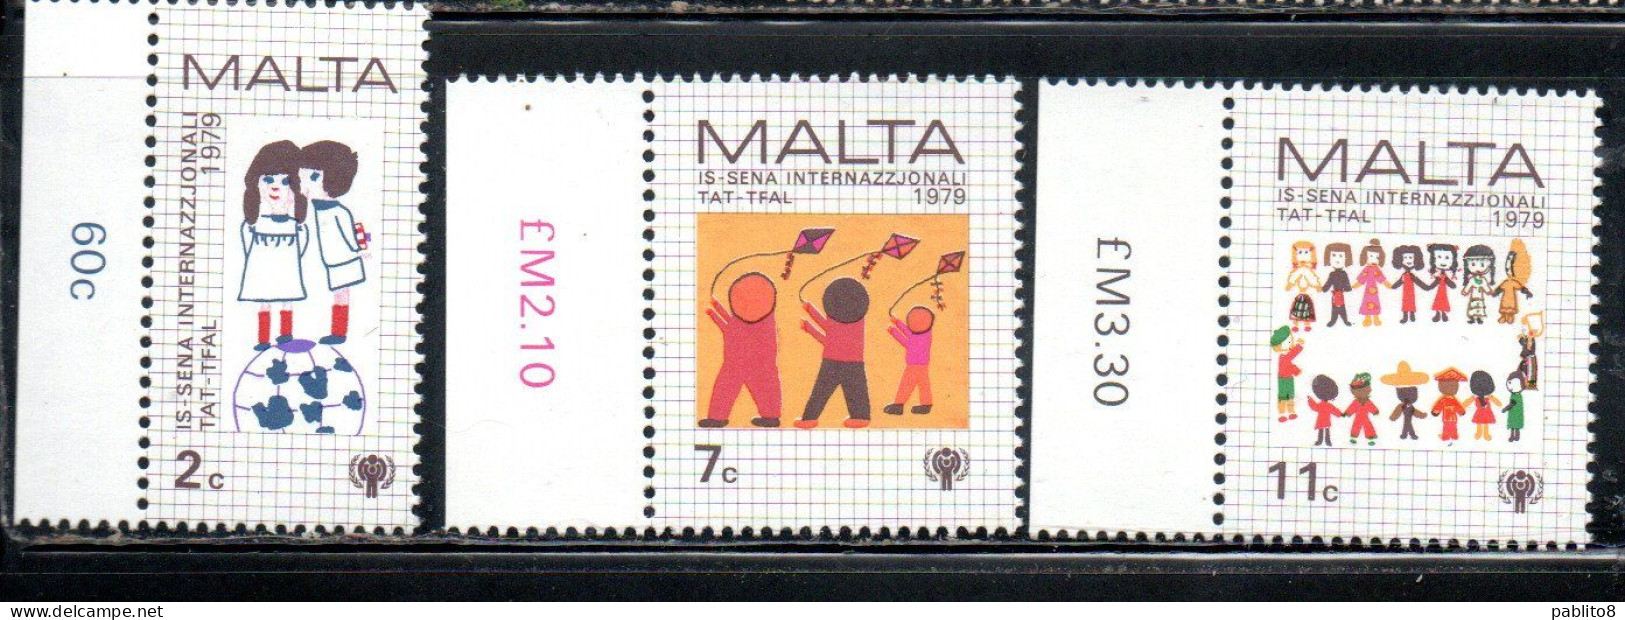 MALTA 1979 INTERNATIONAL CHILD YEAR GIORNATA INTERNAZIONALE DEL FANCIULLO COMPLETE SET SERIE COMPLETA MNH - Malta